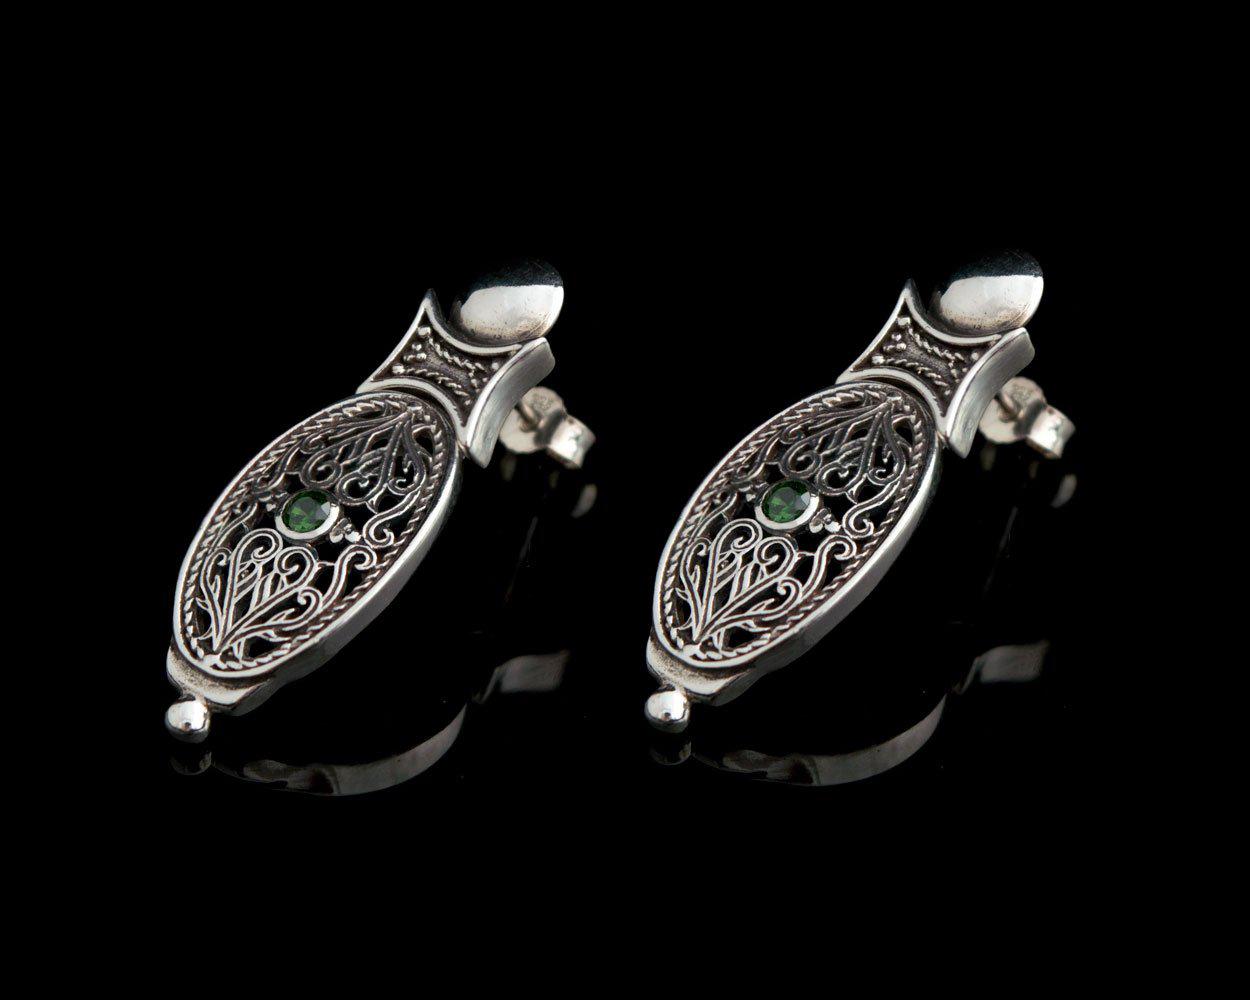 Byzantine Earrings handcrafted in Sterling Silver with zircon, sterling silver earrings (GT-09) - ELEFTHERIOU EL